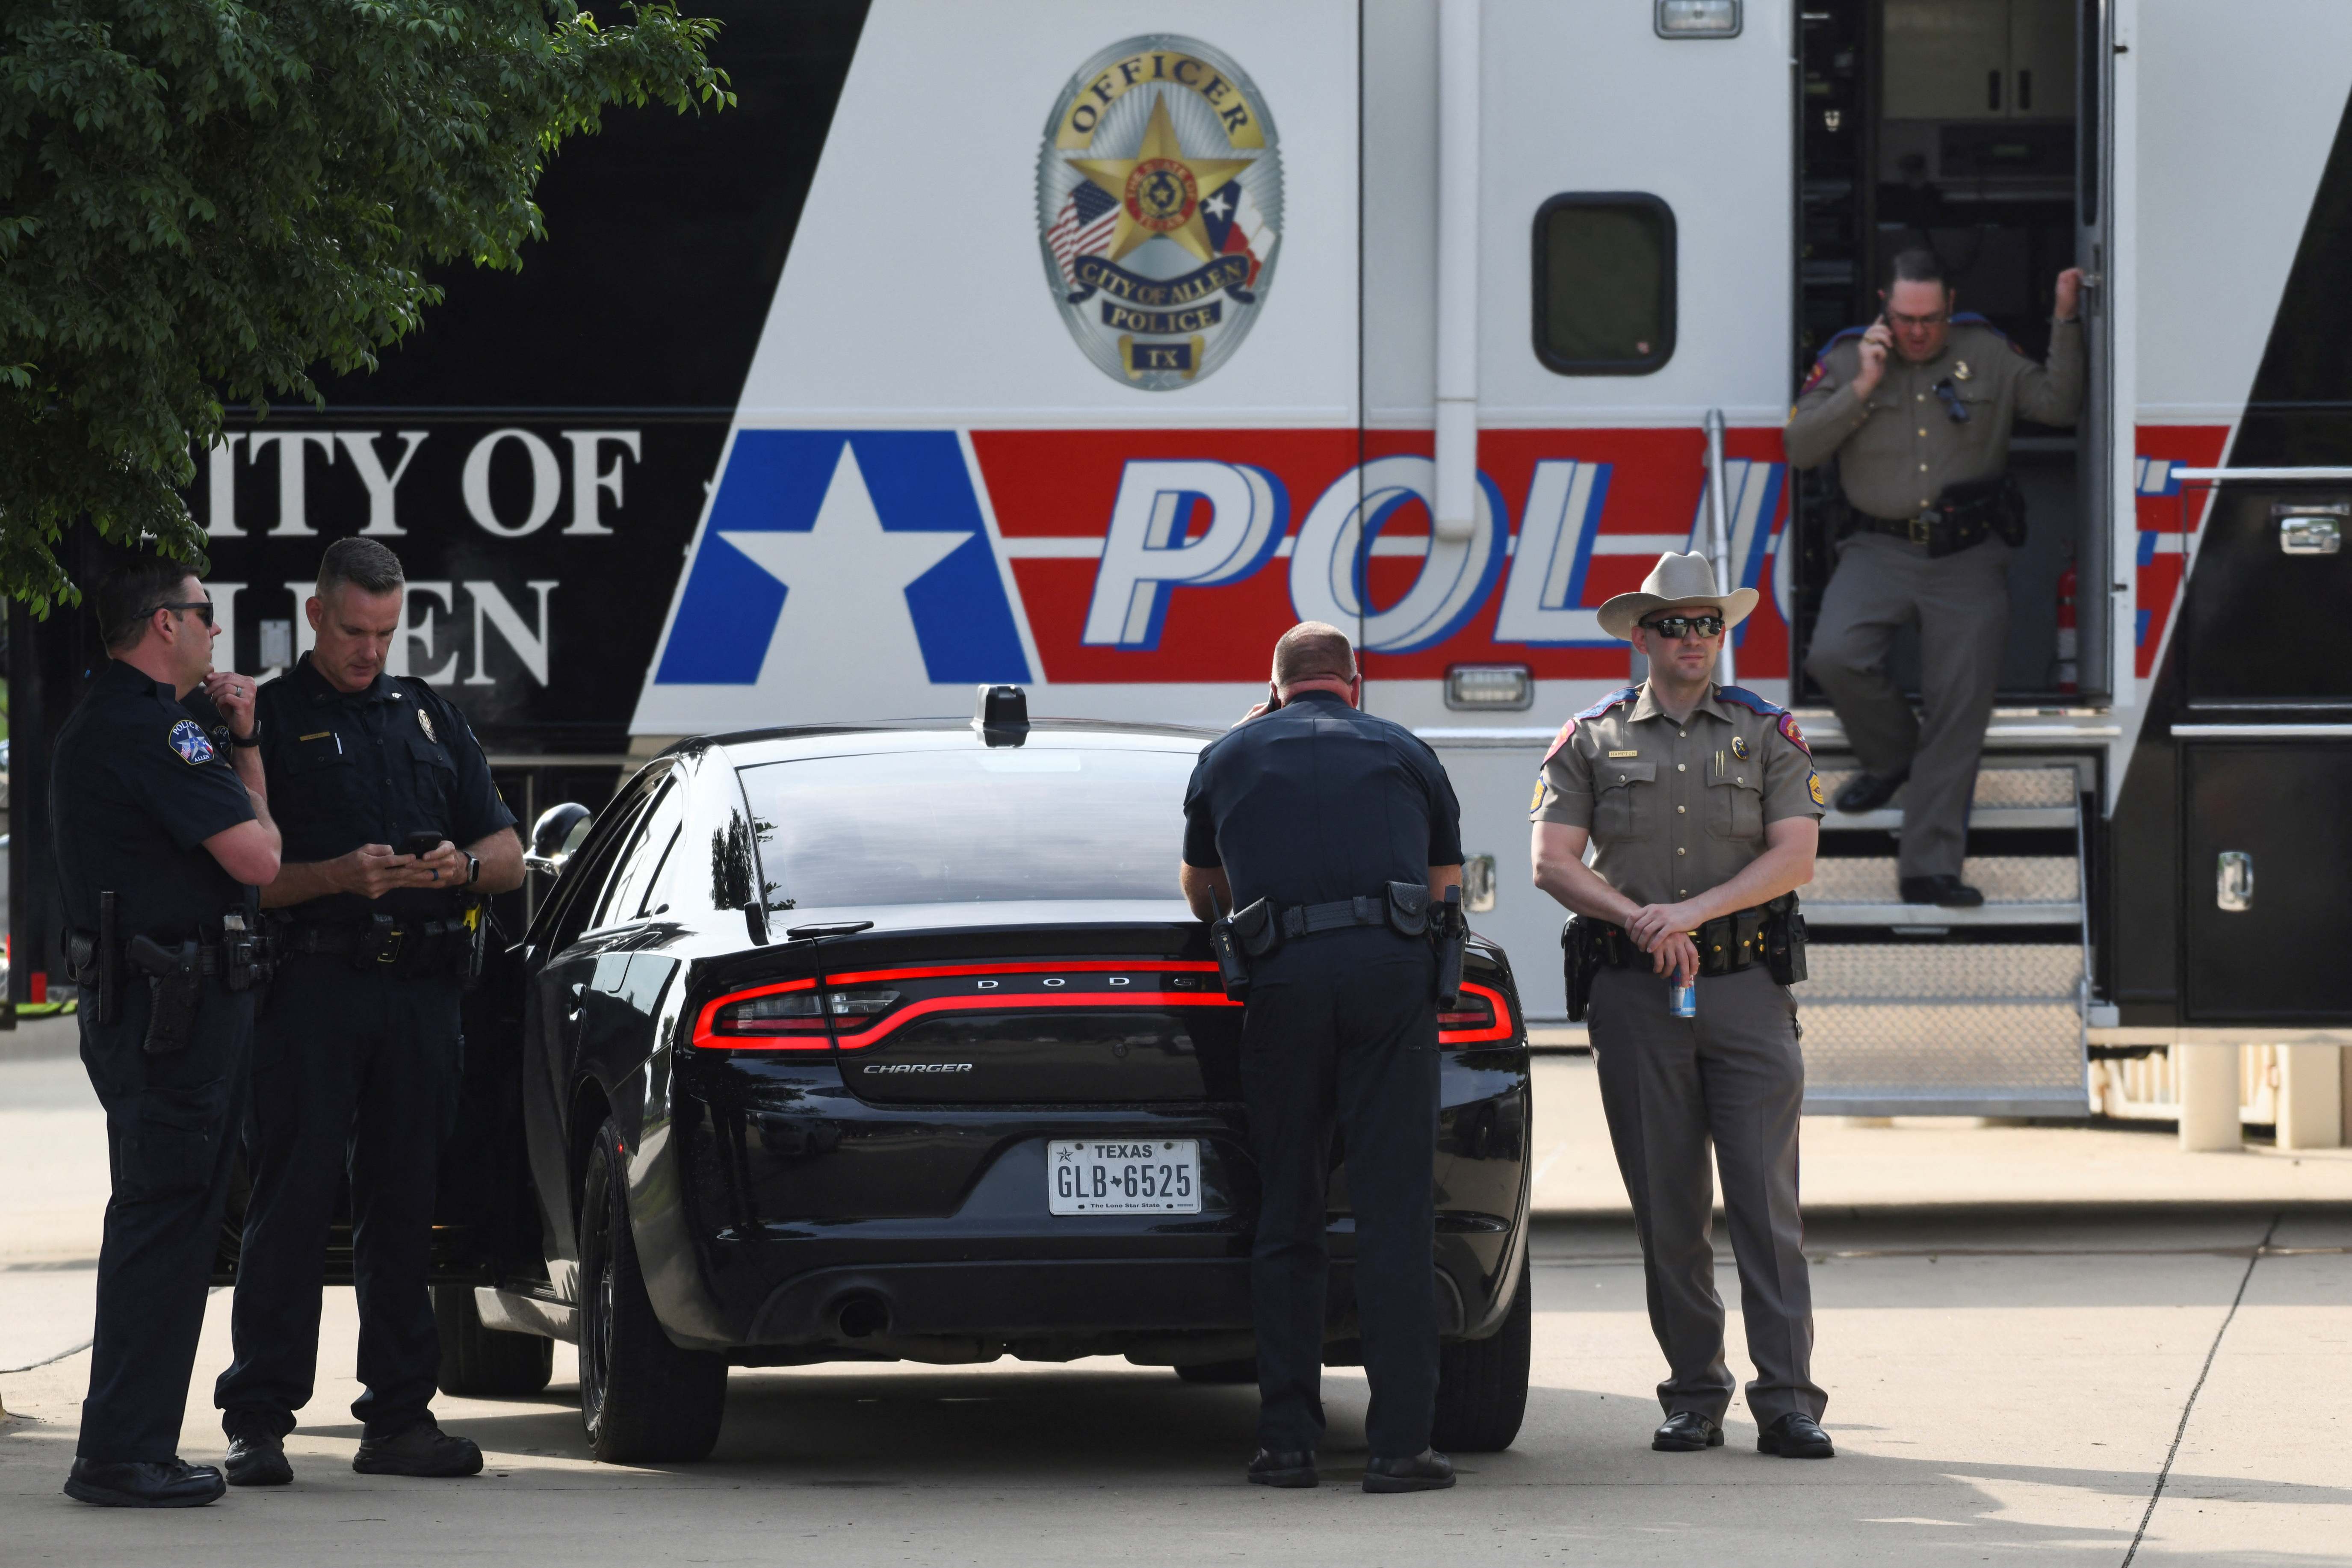 EEUU: tiroteo en un centro comercial de San Antonio deja al menos un muerto